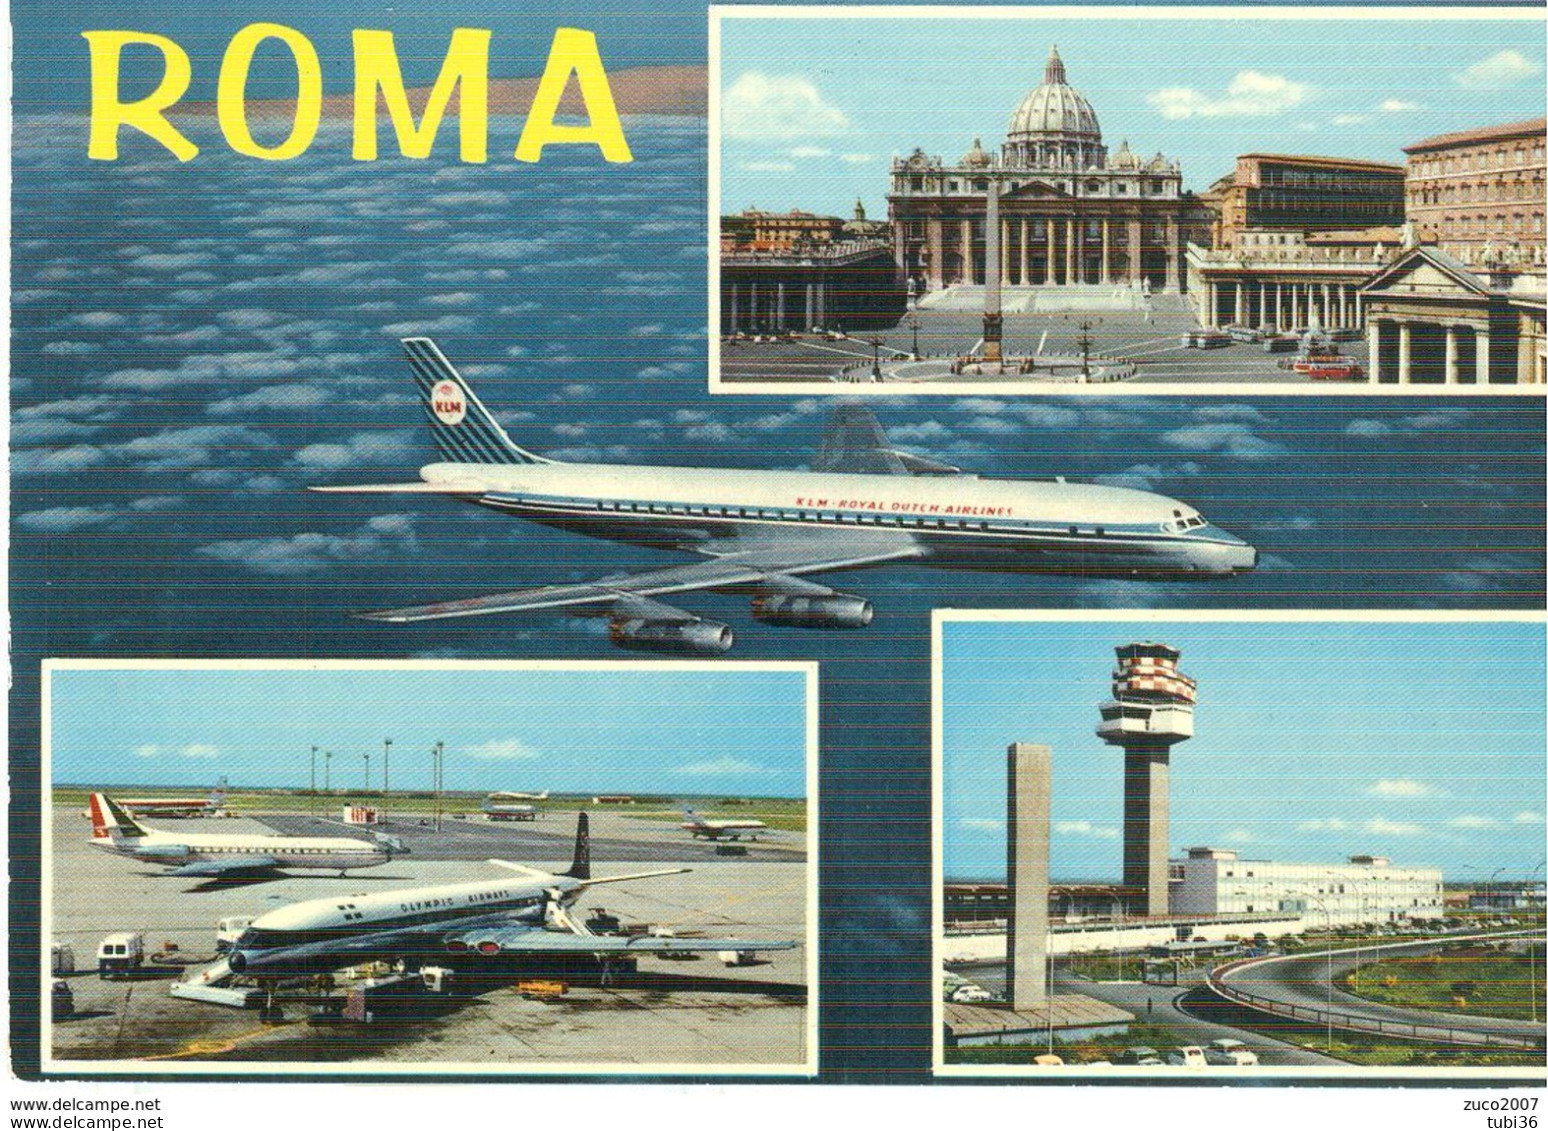 ROMA - 4 VEDUTINE - AEROPORTO,AEREI -S.PIETRO-COLORI,VIAGGIATA 1969 - POSTE ROMA - Transportes